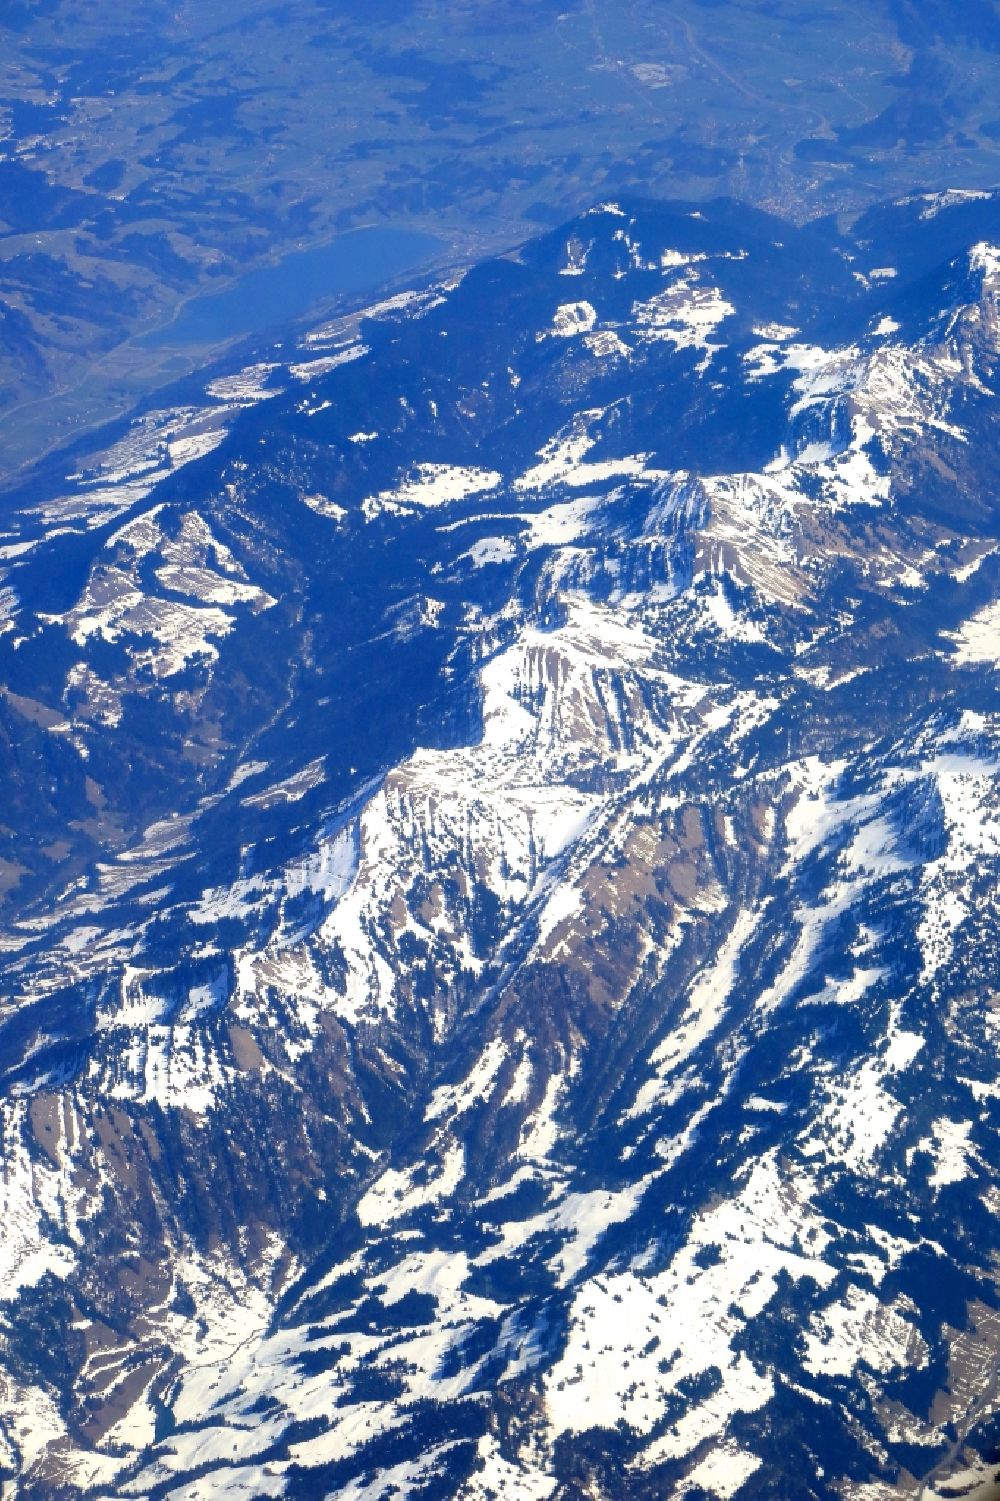 Luftbild Oberstaufen - Winterluftbild Felsen- und Berglandschaft der Bayerischen Alpen in Oberstaufen im Bundesland Bayern, Deutschland